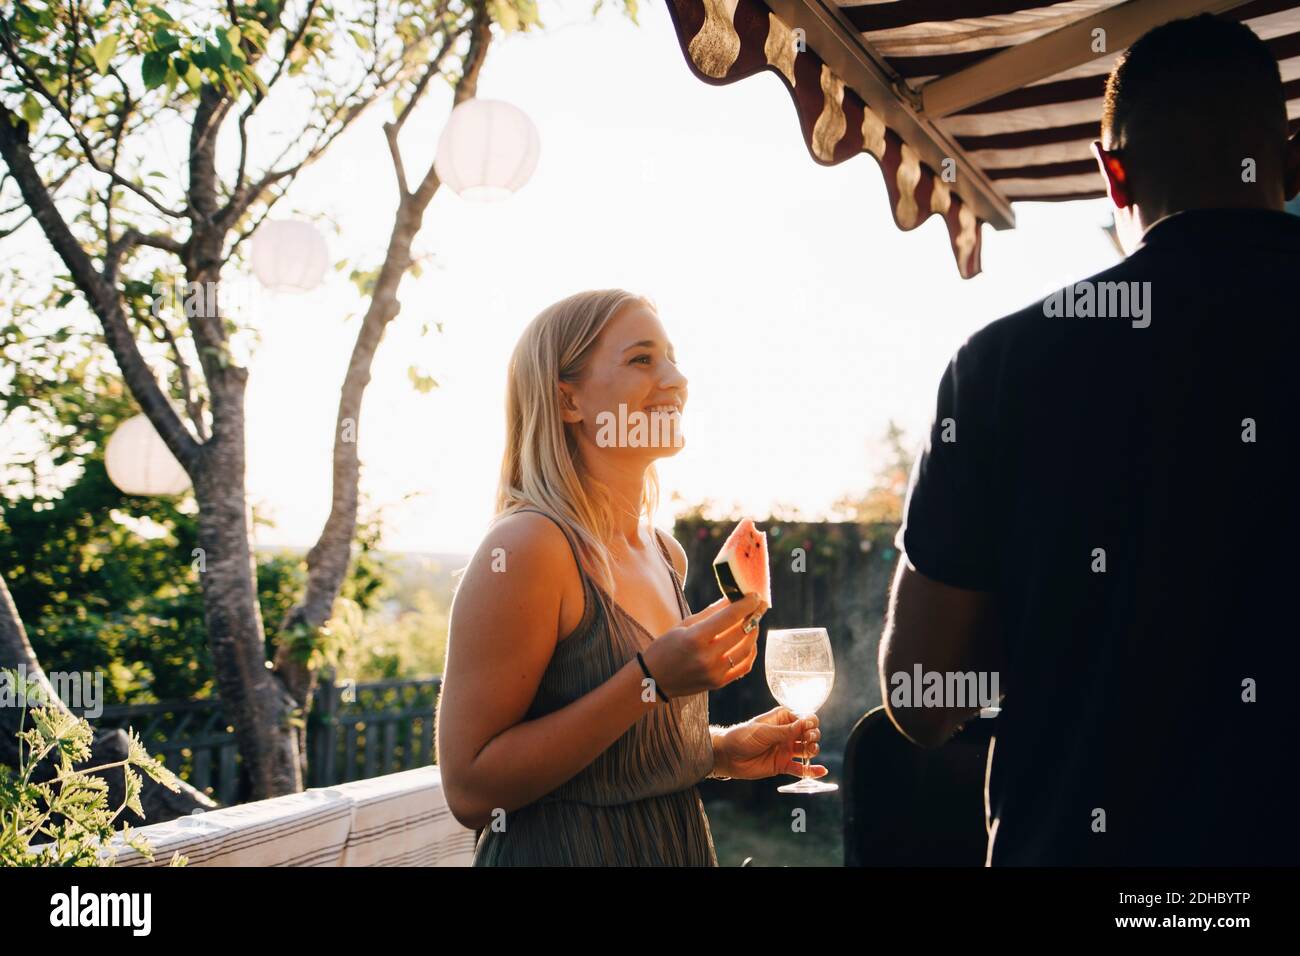 Frau, die Wassermelone isst und Wein trinkt, während sie mit einem Freund spricht In der Party Stockfoto